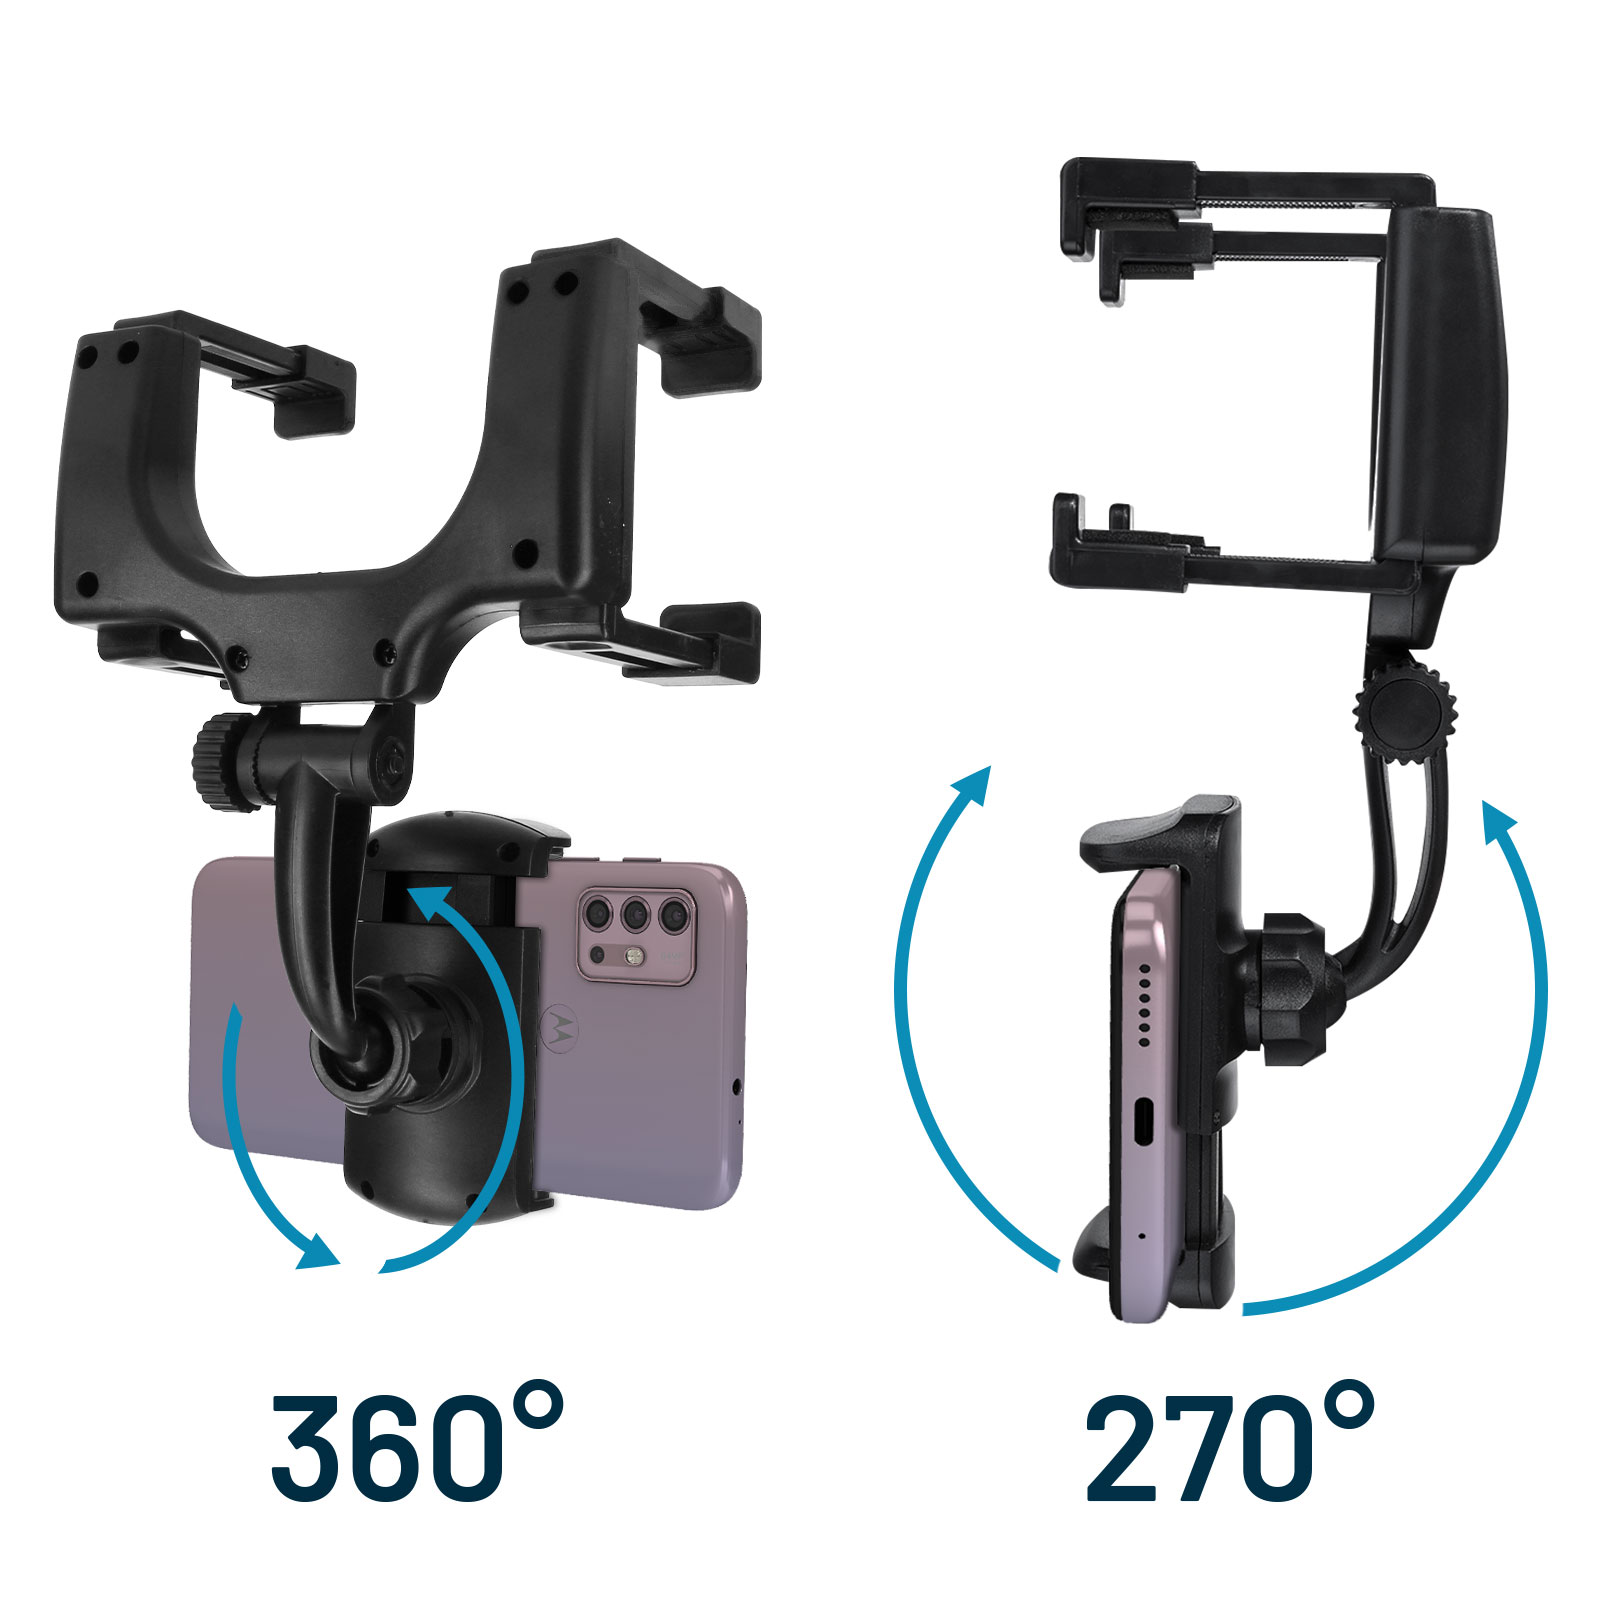 Auto Rückspiegel Handyhalter, 360° drehbarer Handyhalter, multifunktionaler  Handyhalter, stoßfest, für Smartphone, für GPS-Fahrrekorder